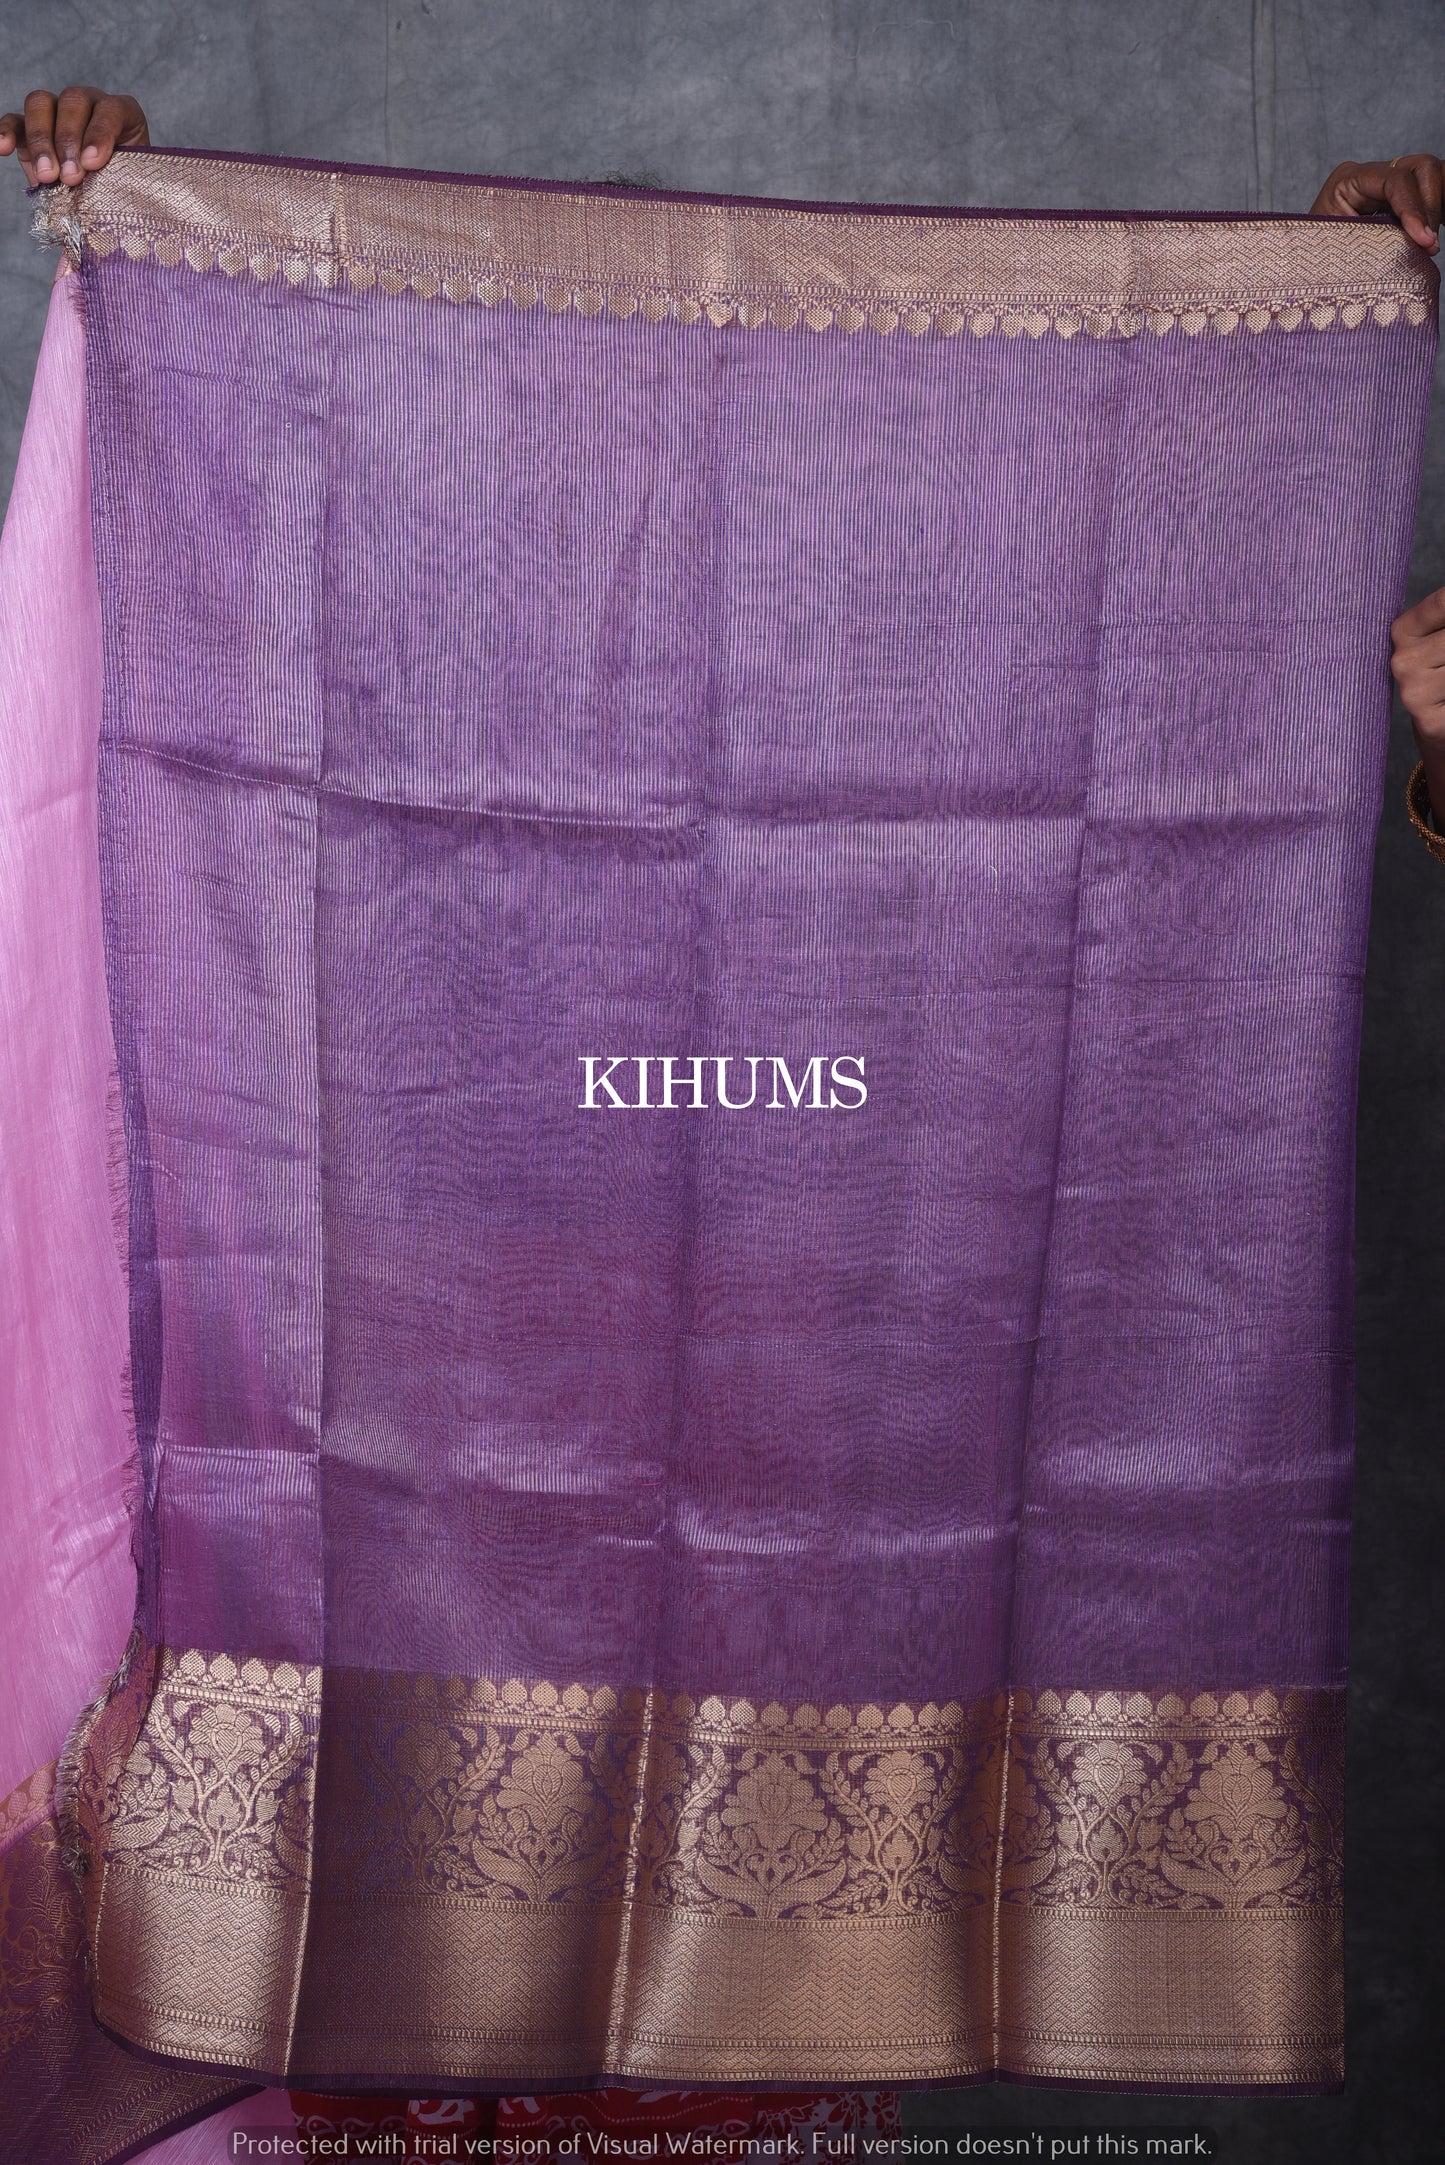 Light Pink Banarasi Silk Linen Saree | Purple and Gold Zari Border | Light Pink Body | KIHUMS Saree